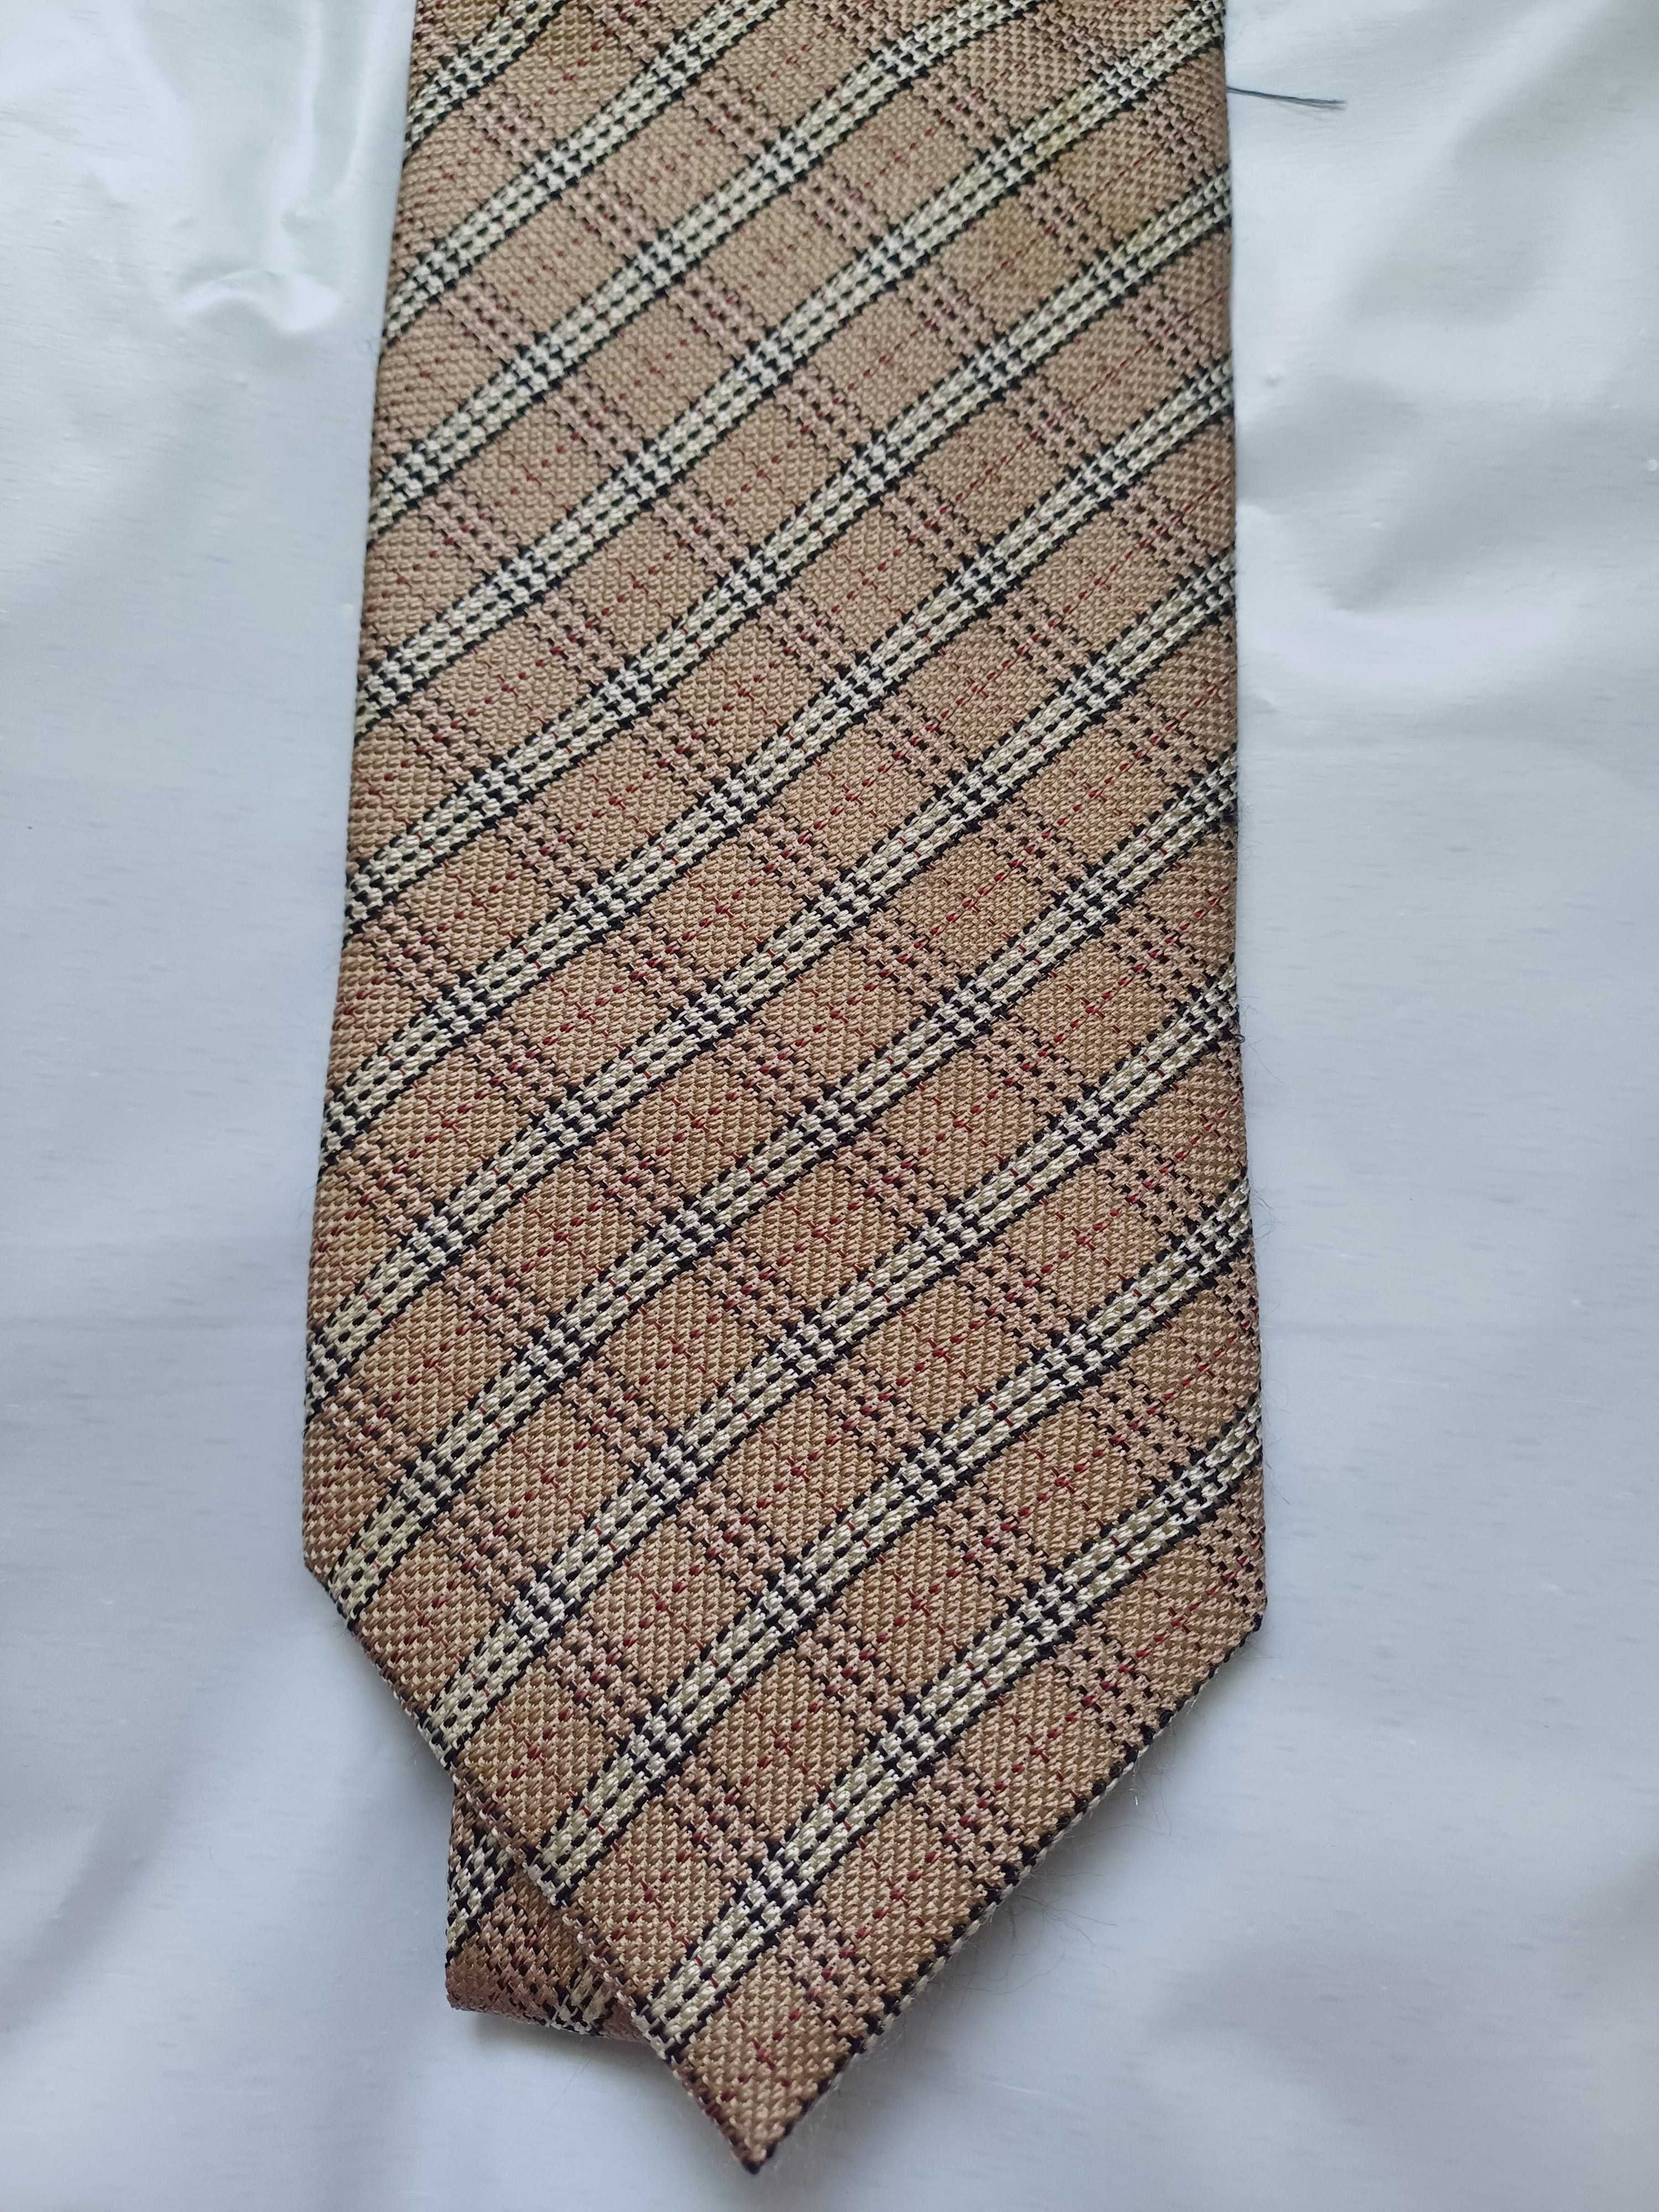 Burberry jedwabny krawat w kratę